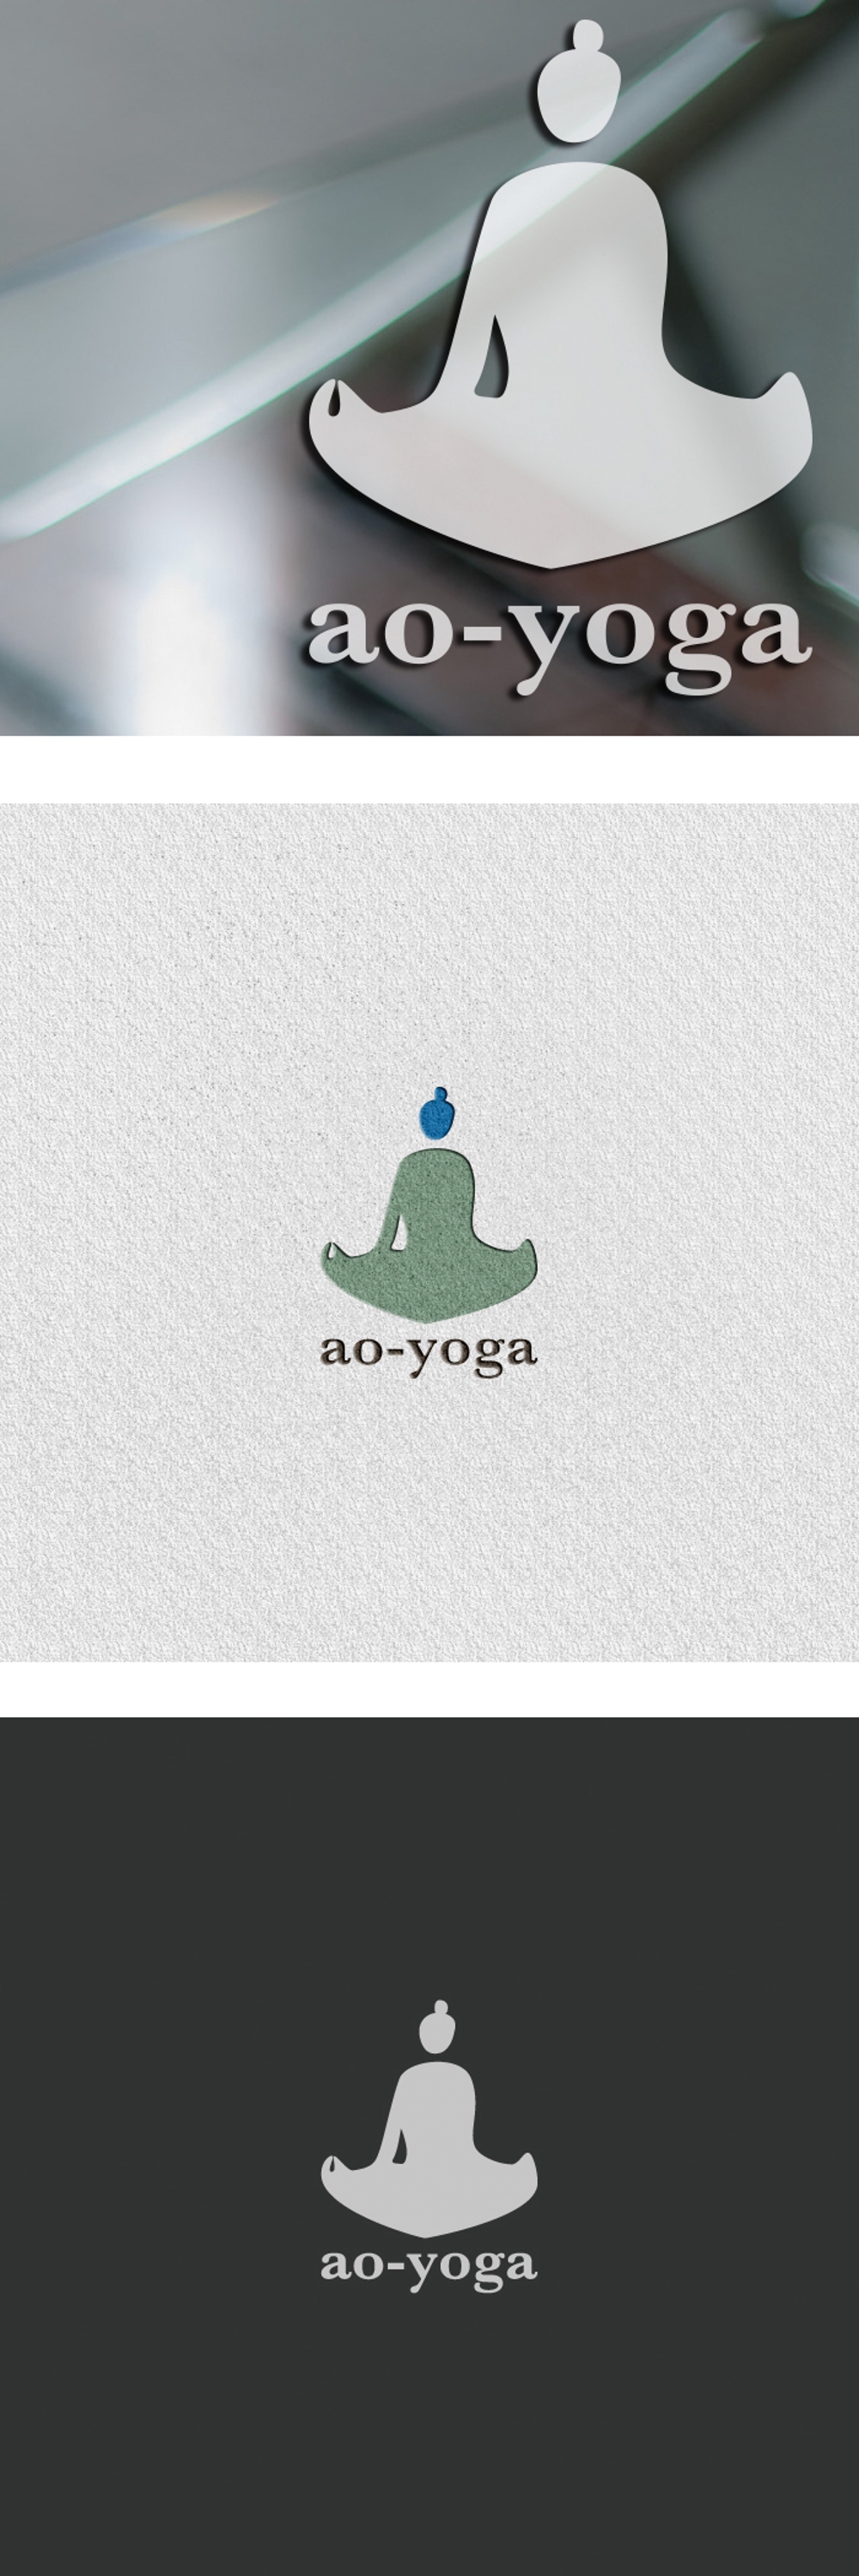 ヨガ瞑想指導「ao-yoga 」のロゴ作成